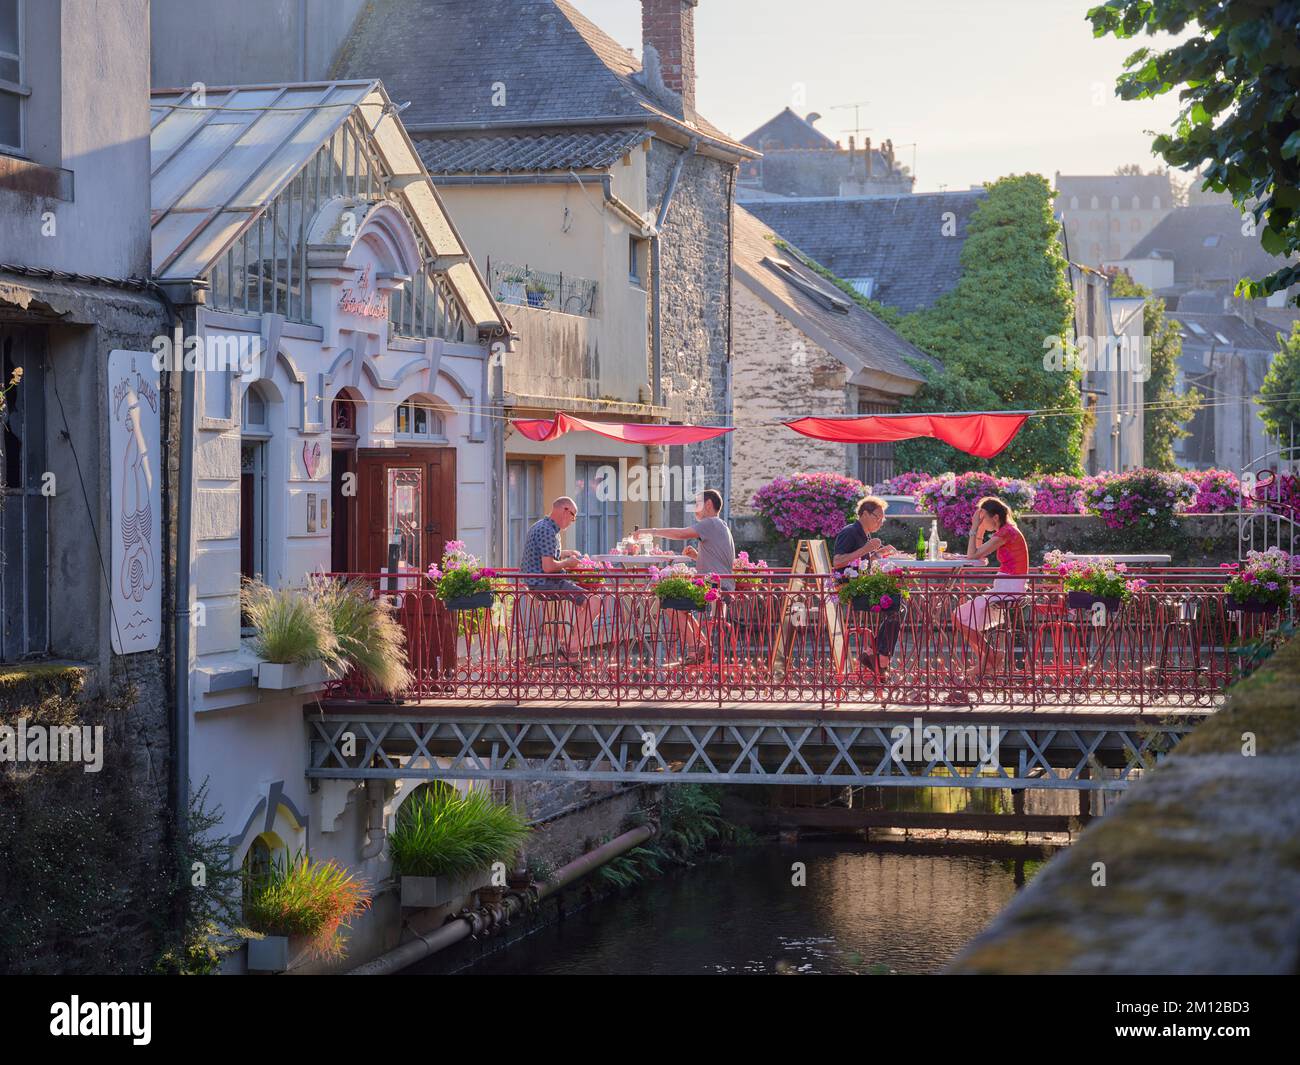 Ein Steg, auf dem Gäste eines Restaurants in der abendlichen Wärme des Sommers in Morlaix im französischen Departement Finistère unterhalten werden Stockfoto